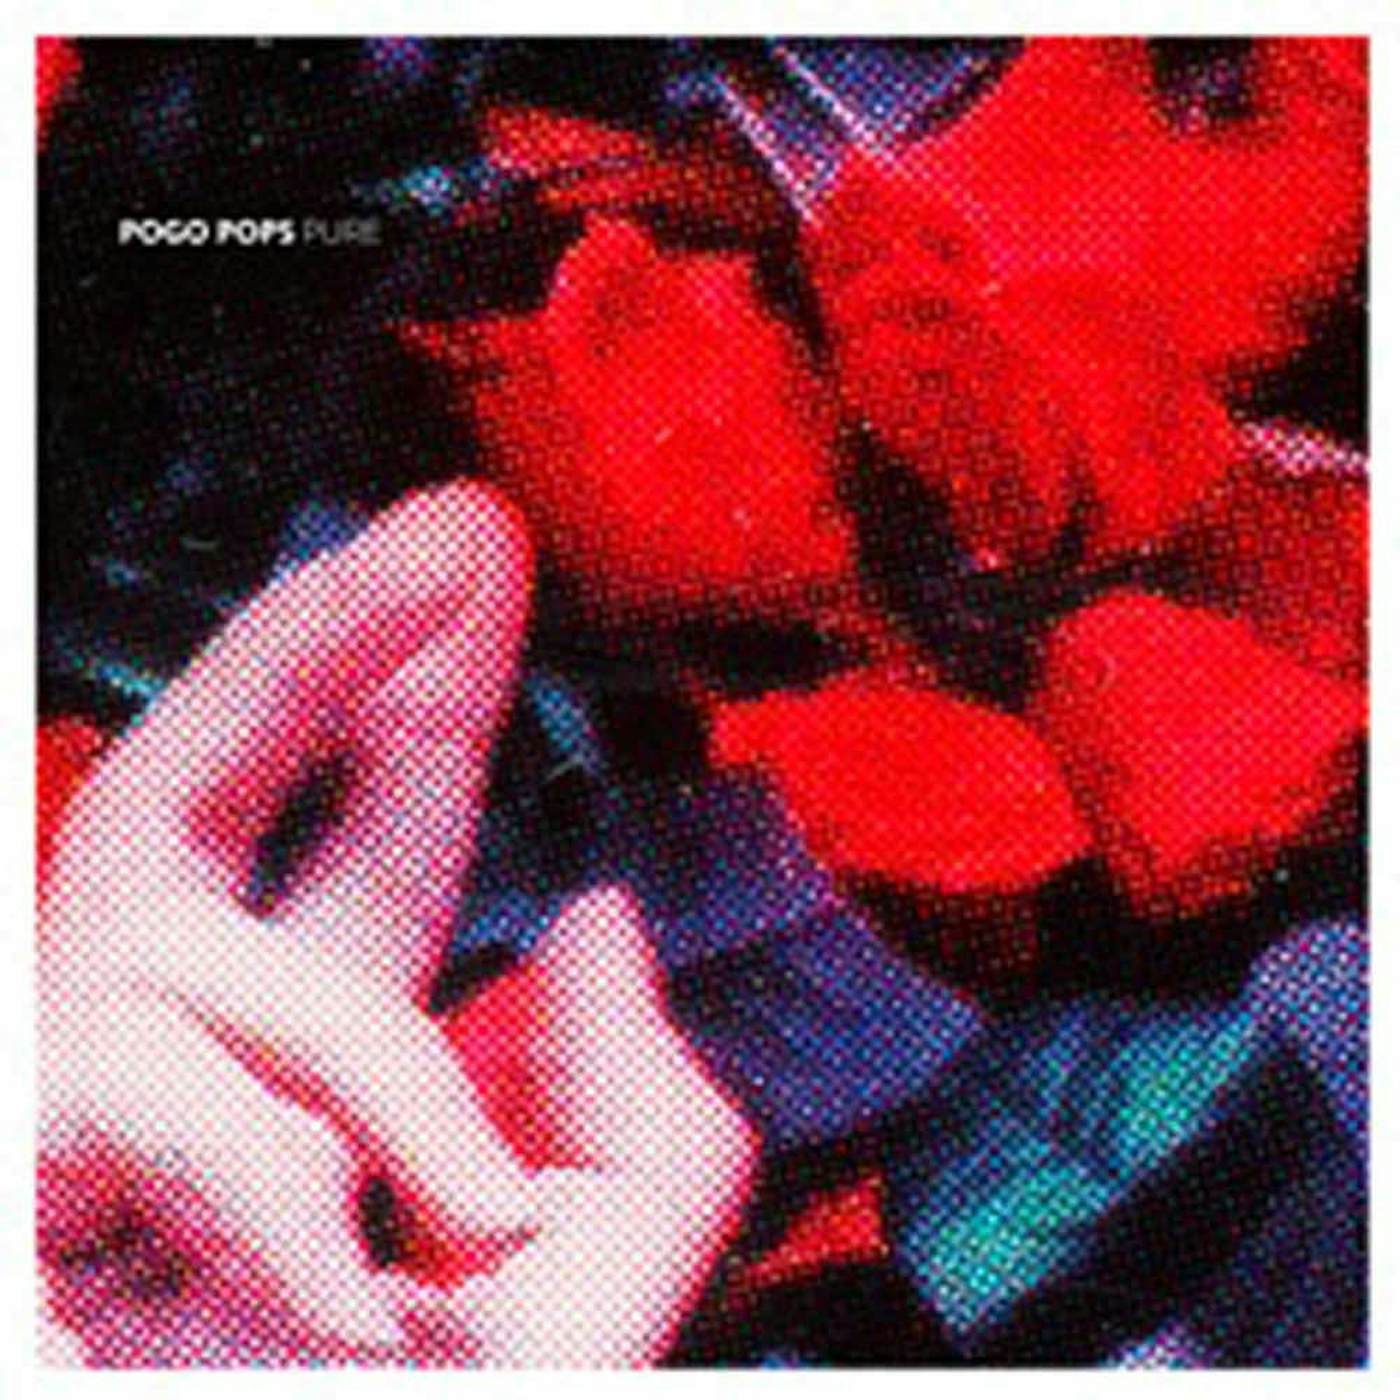 Pogo Pops LP - Pure(+Cd)